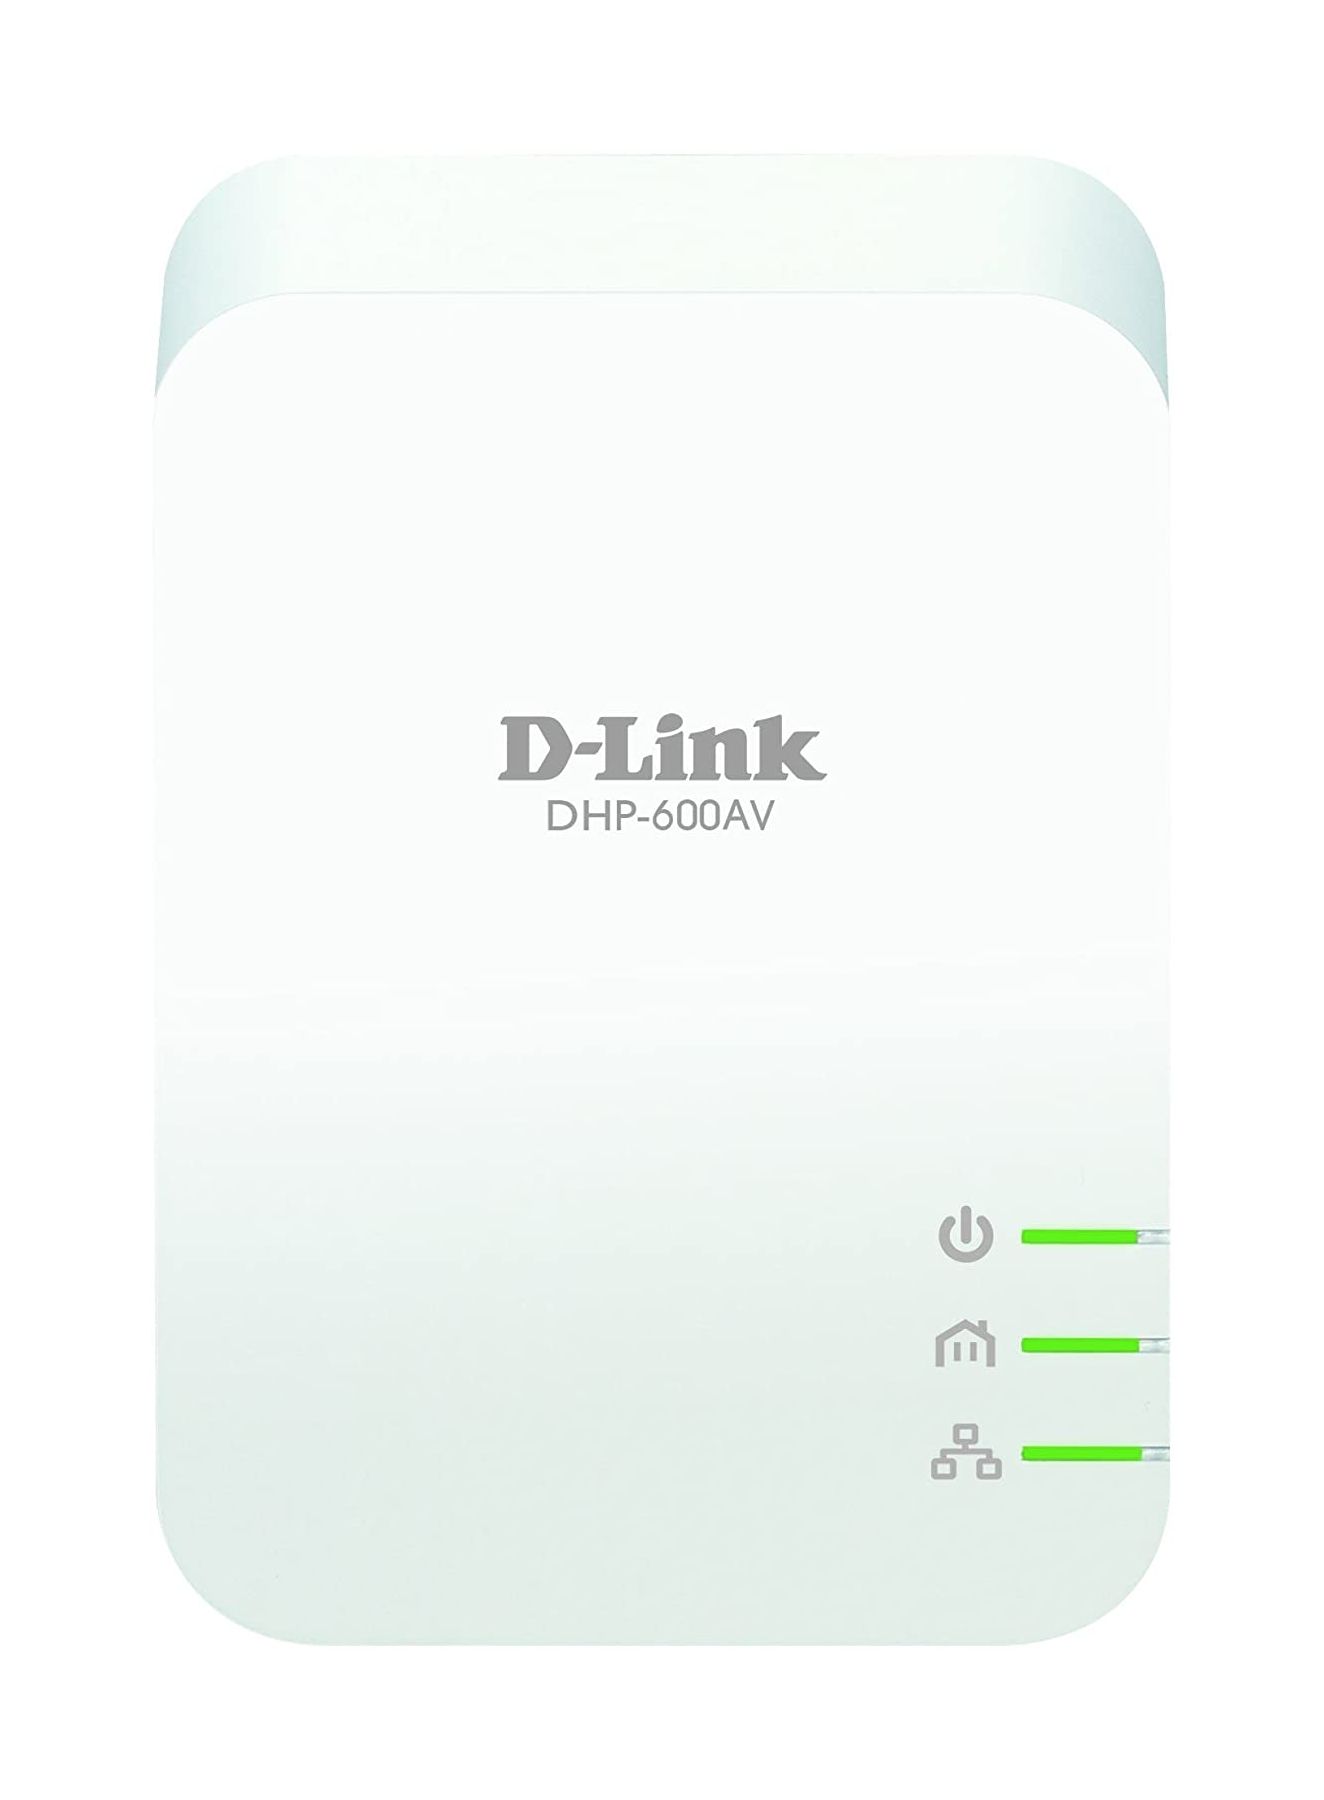 D-Link DHP-601AV front single